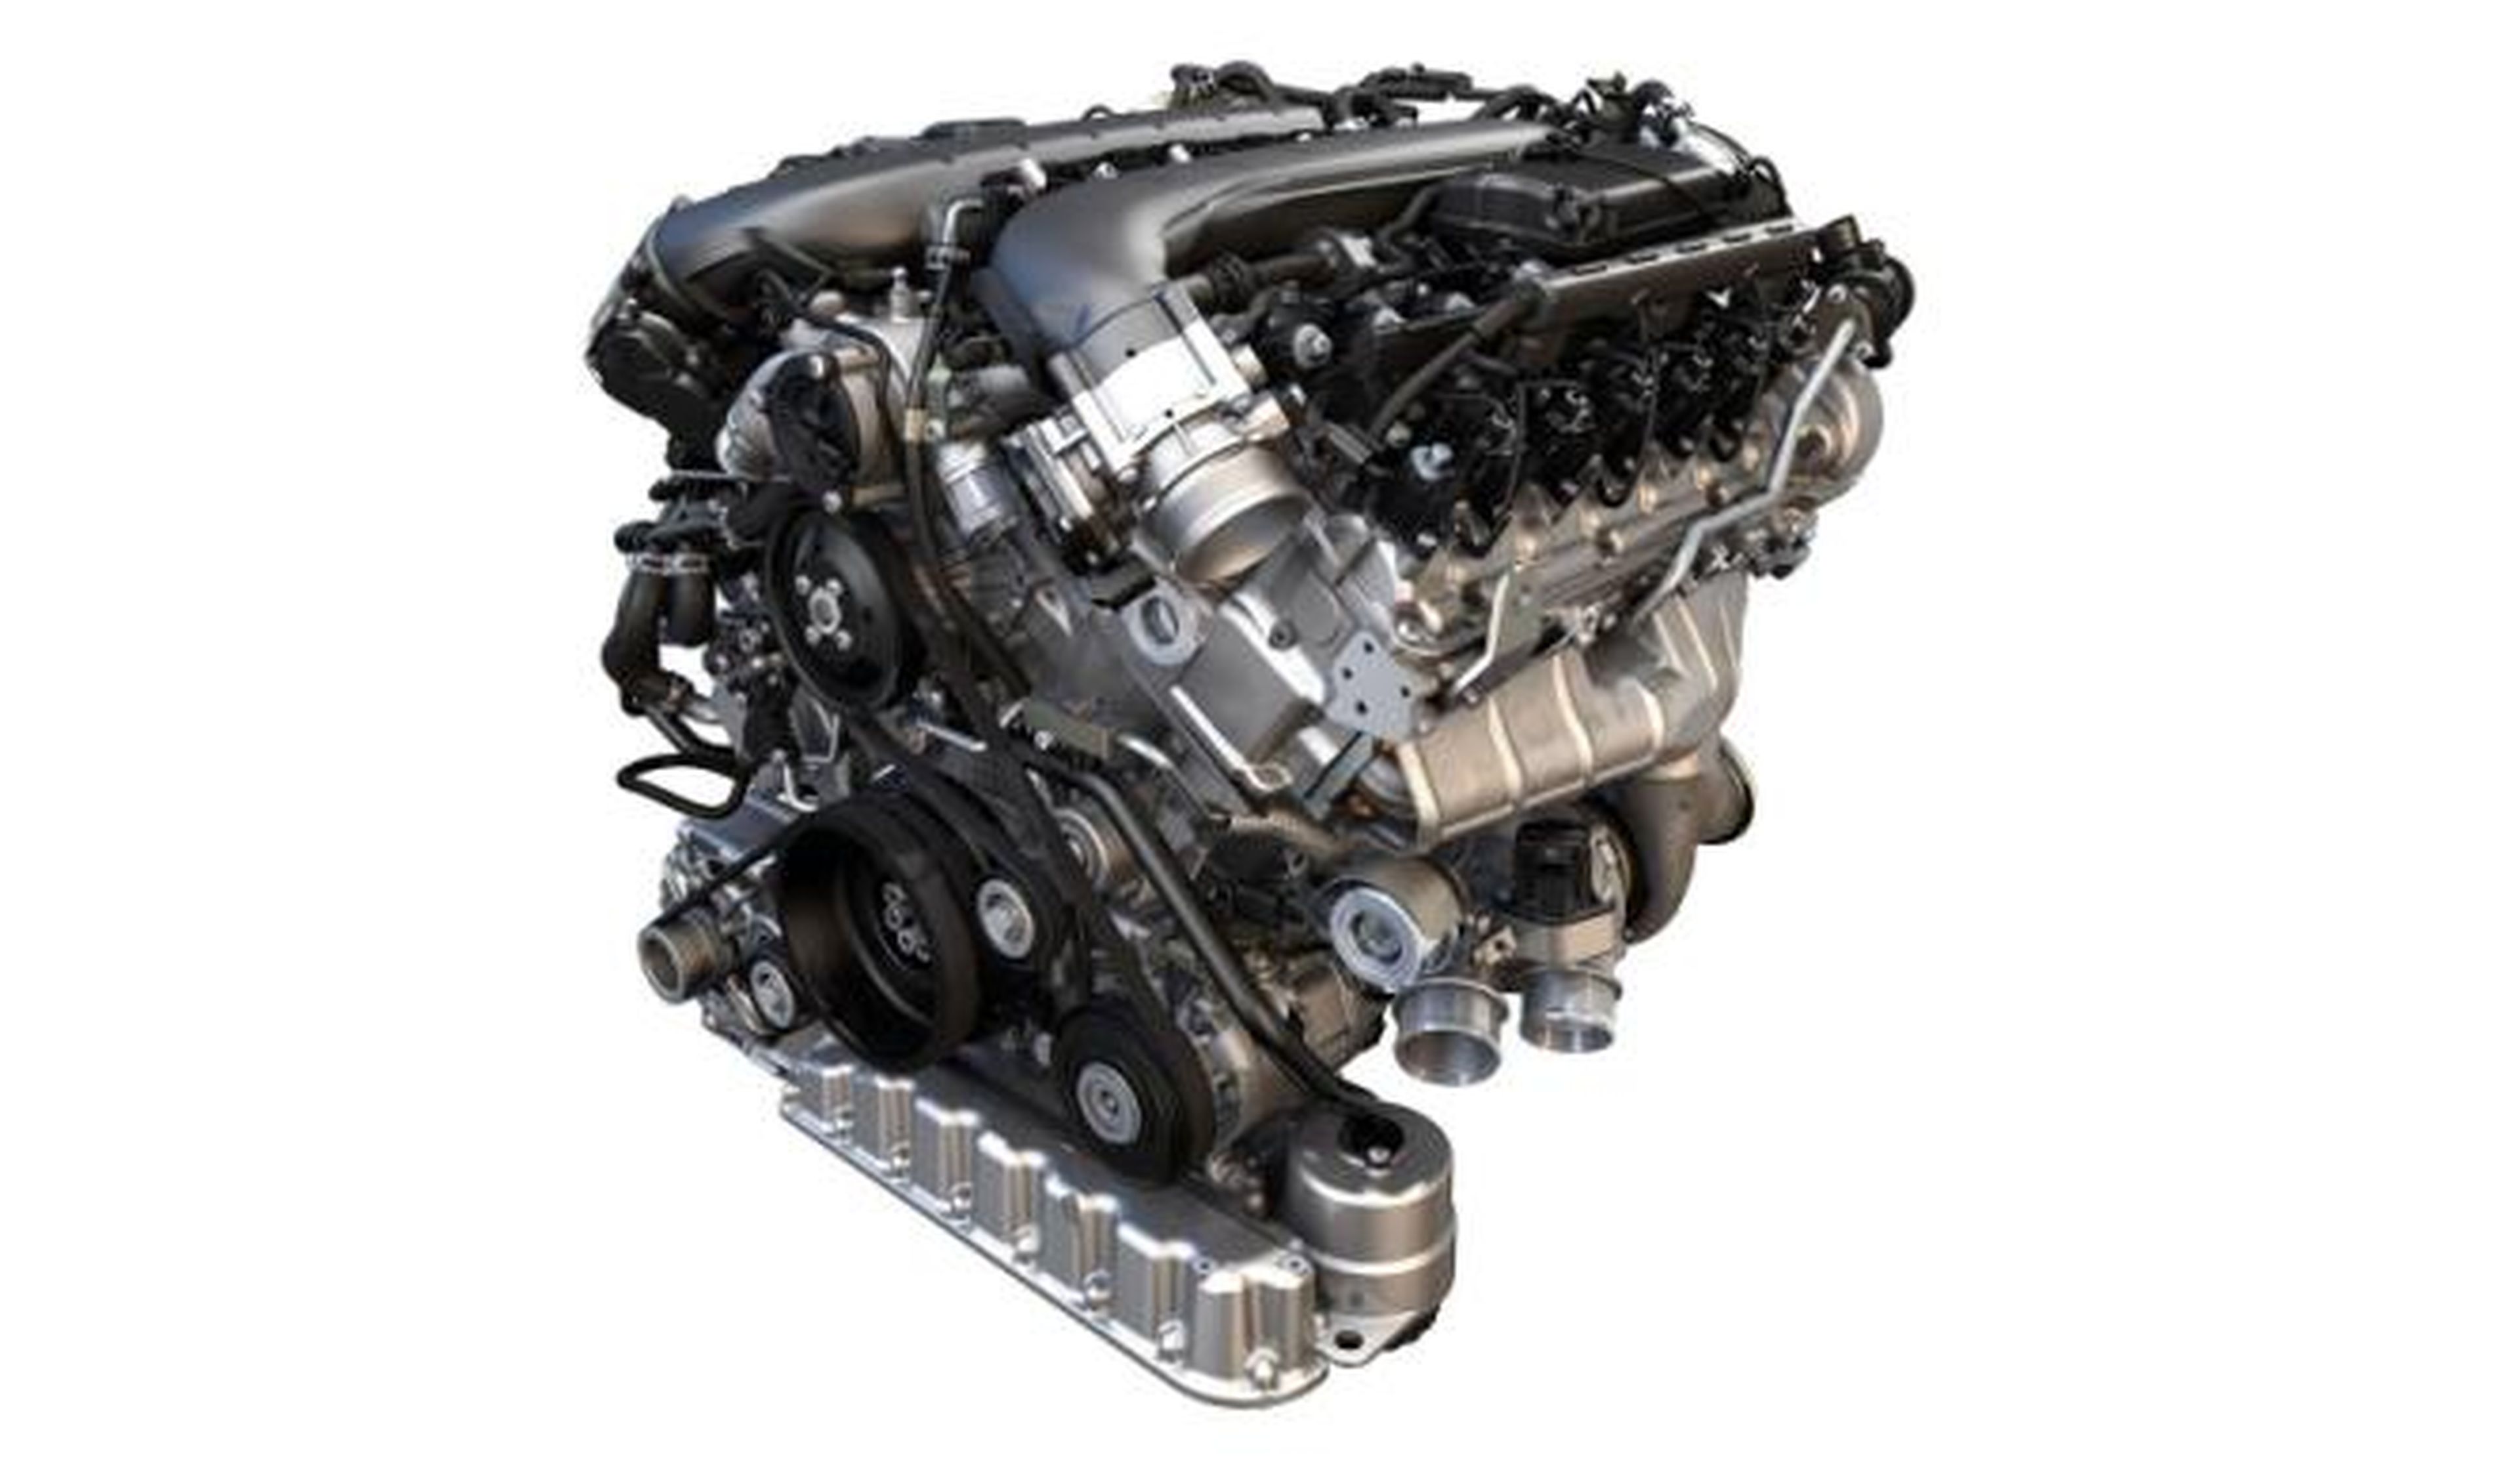 Volkswagen presenta su nuevo motor TSI W12 de 6,0 litros